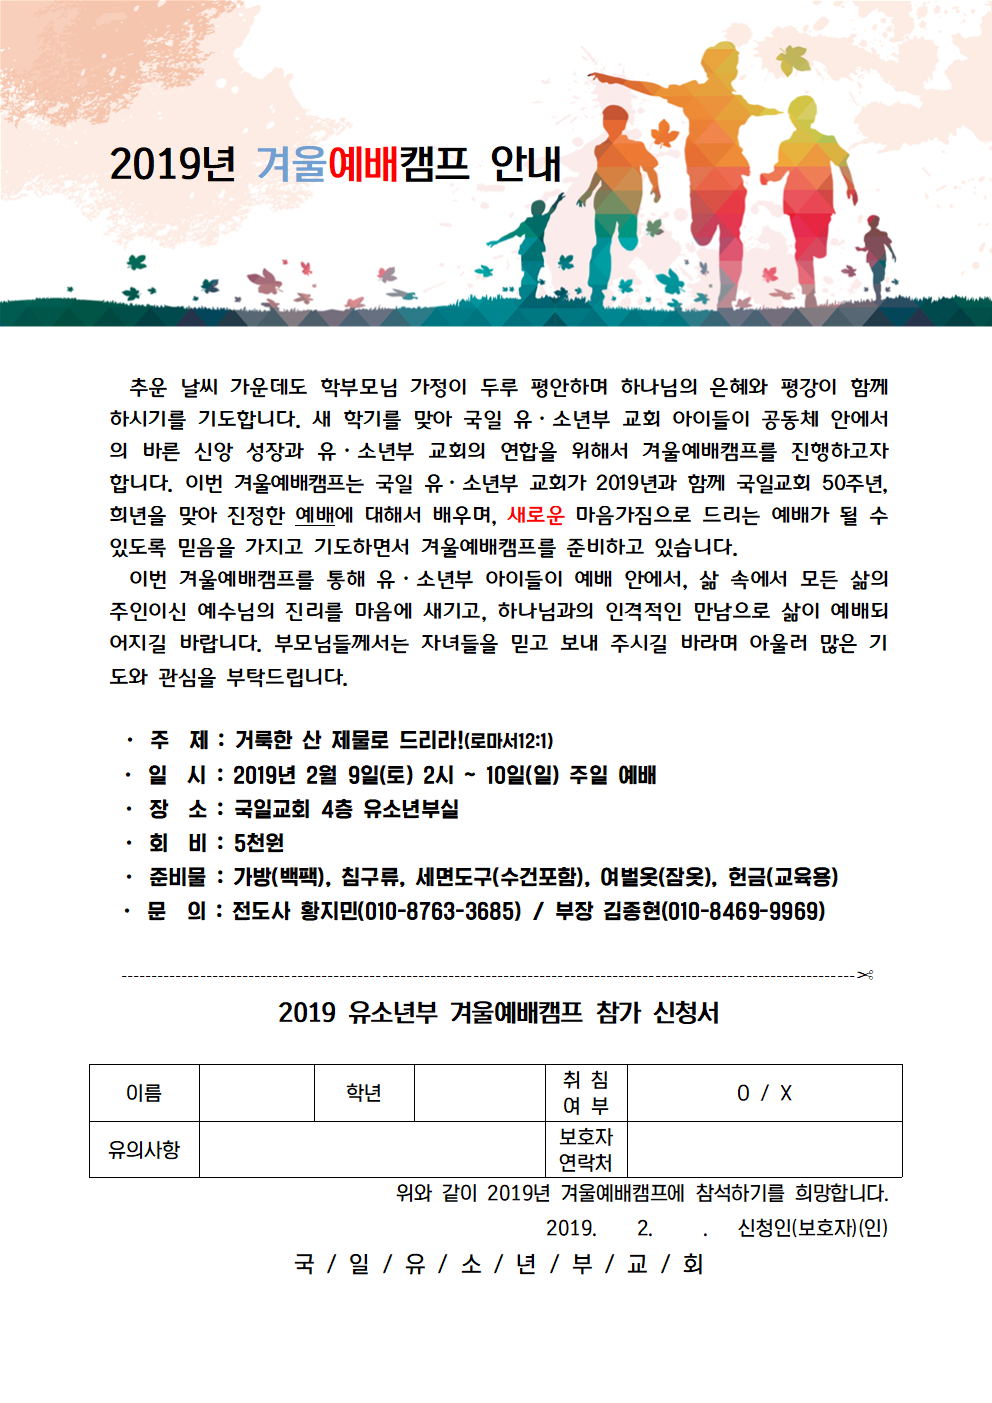 2019겨울캠프 안내문 및 신청서001.png